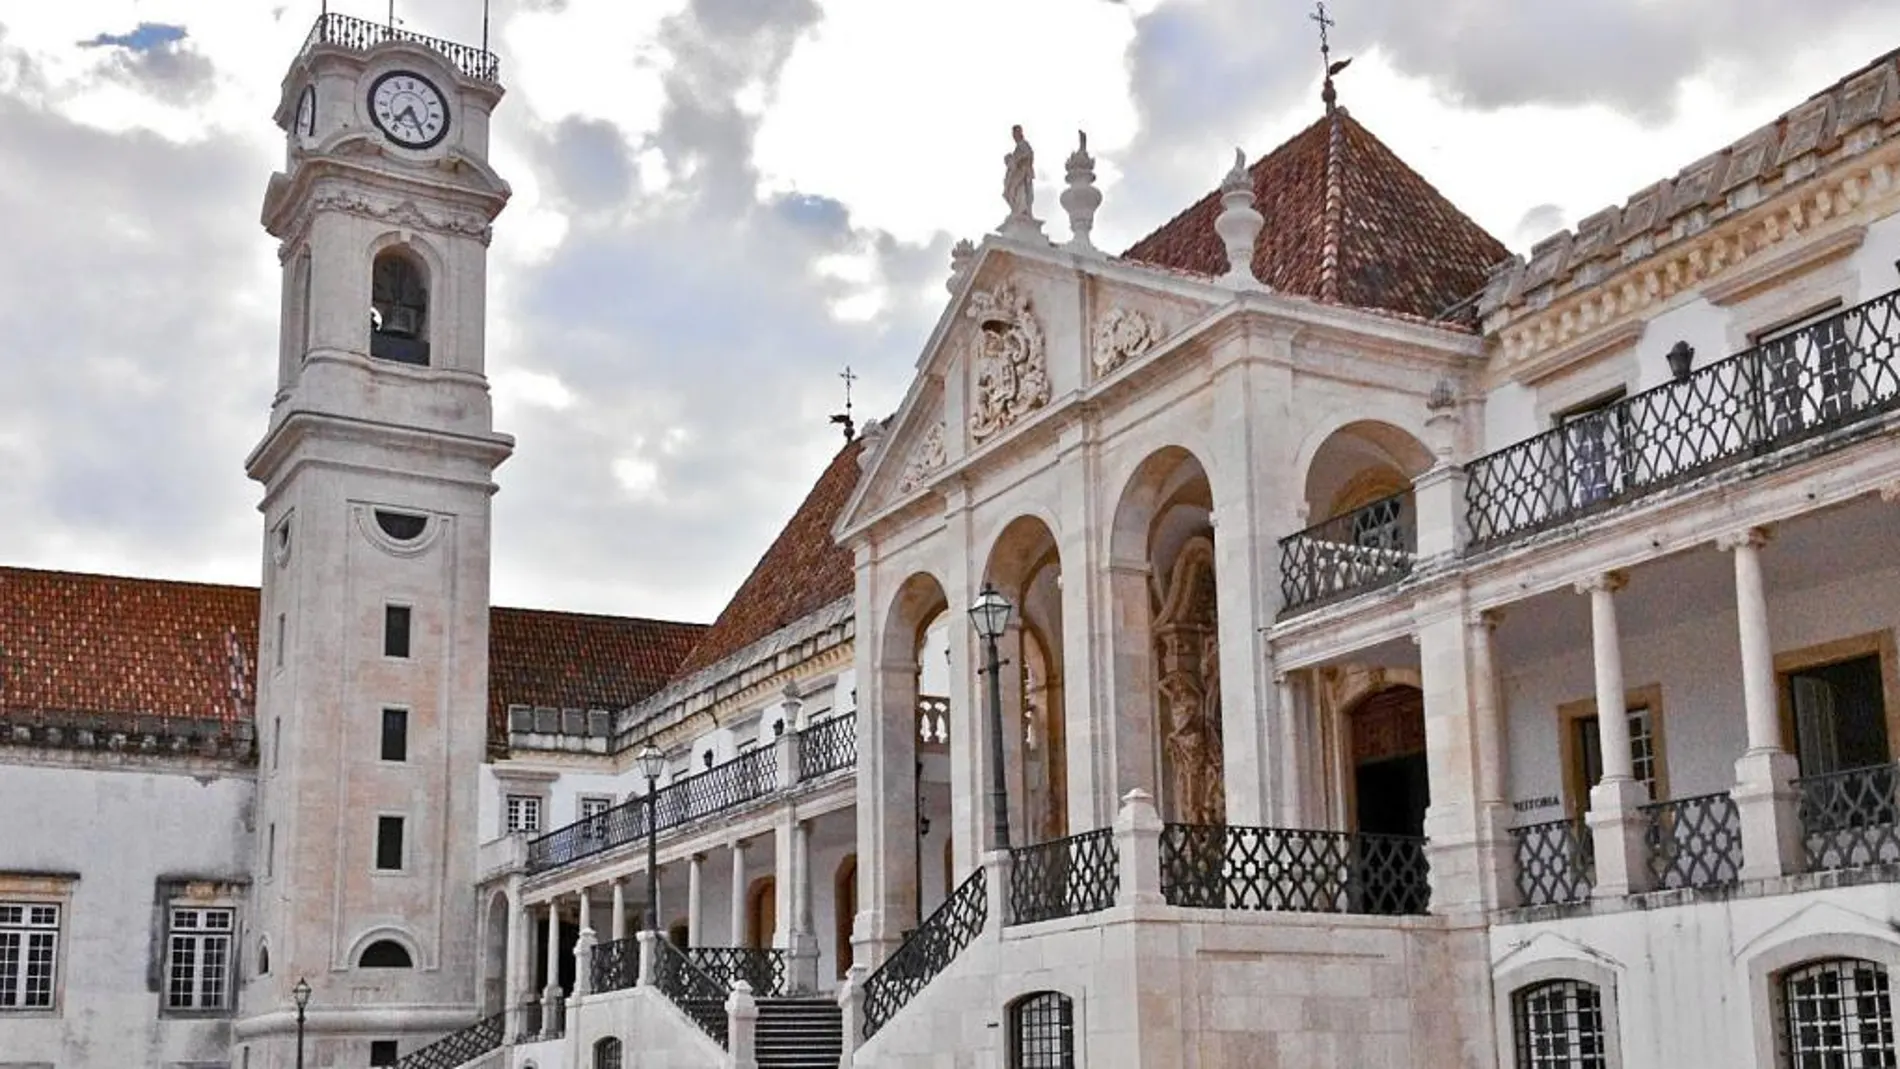 La universidad de Coimbra cuenta con la biblioteca universitaria más suntuosa del mundo: la Biblioteca Joanina, que fue edificada en 1717